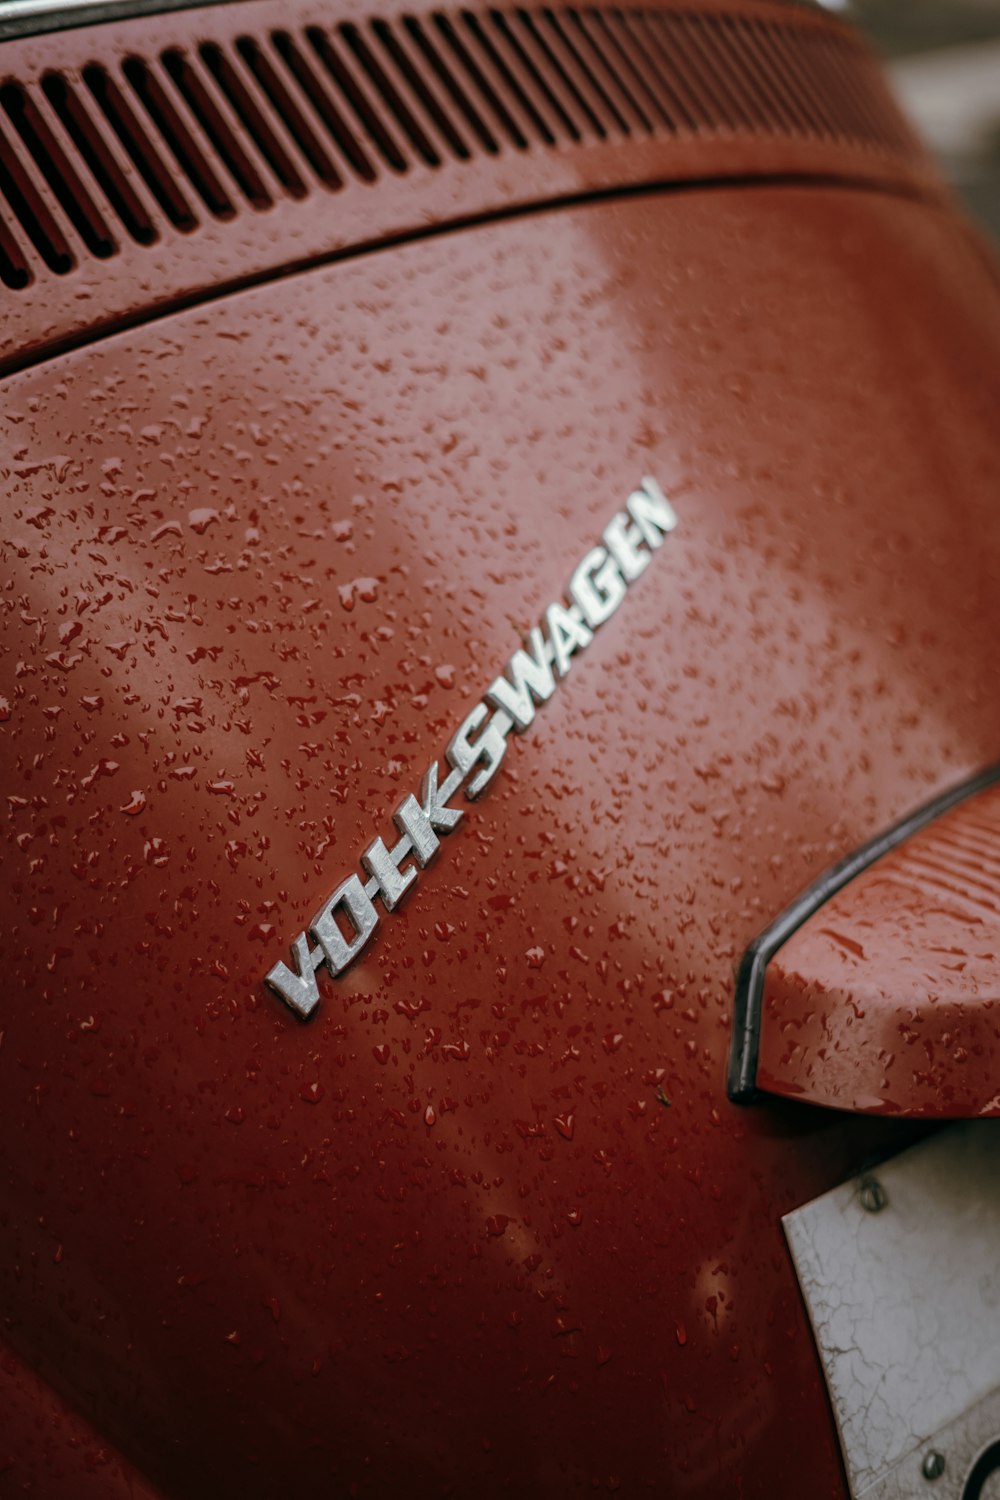 Um close up da palavra Volkswagen em um carro vermelho